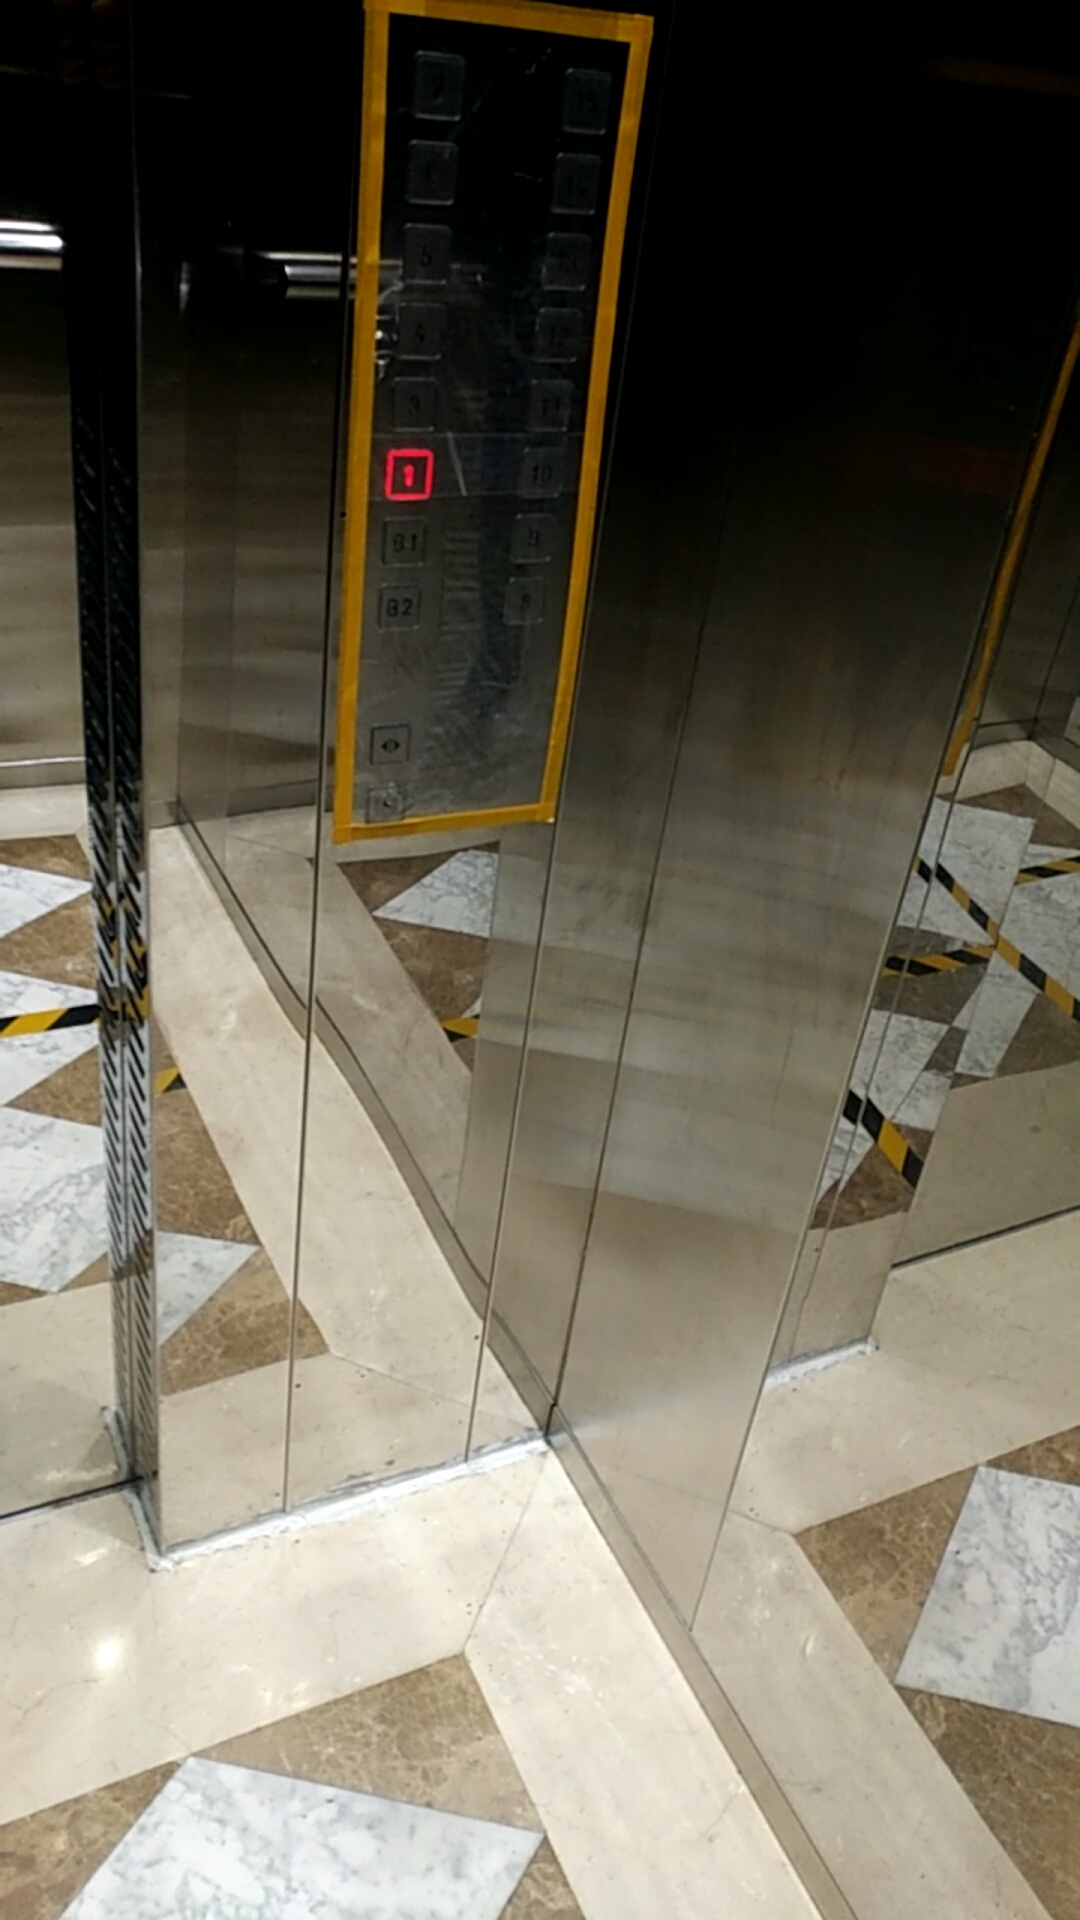 玻璃电梯夜景图片